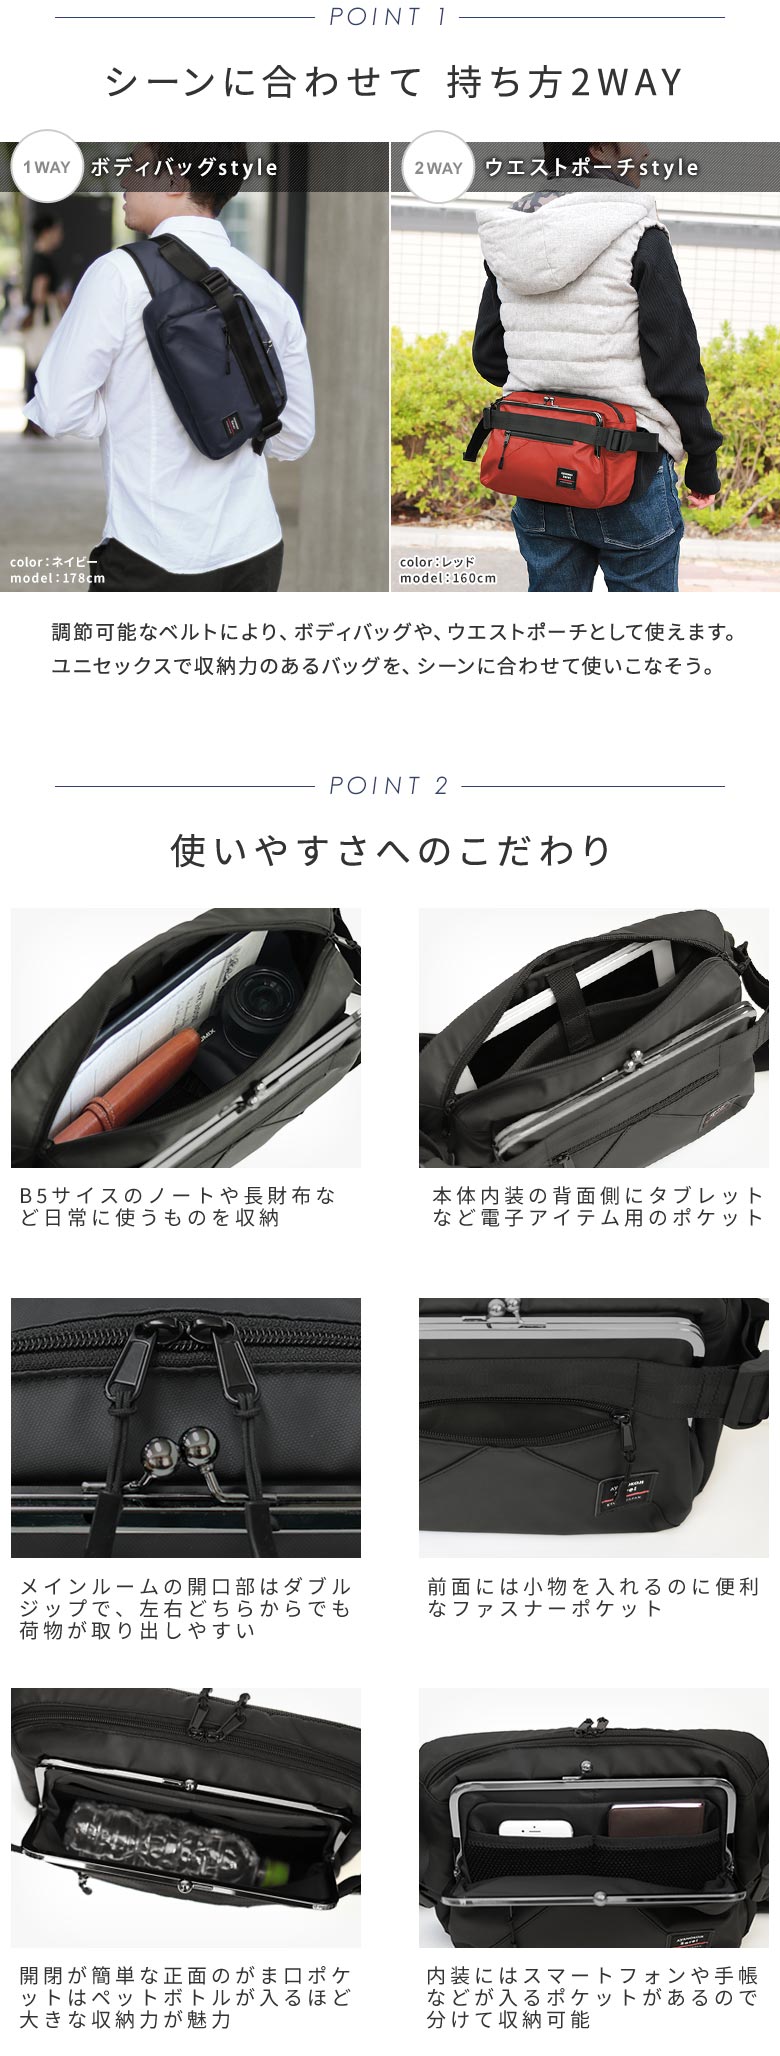 AYANOKOJI Sarei　がま口ボディバッグ　POINT-01　シーンに合わせて 持ち方2WAY。調節可能なベルトにより、ボディバッグや、ウエストポーチとして使えます。ユニセックスで収納力のあるバッグをシーンに合わせて使うことが出来ます。　使いやすさへのこだわり。B5サイスのノートや長財布など日常に使うものを収納。本体内装の背面側にタブレットなど電子アイテム用のポケット。メインルームの開口部はダブルジップで、左右どちらからでも荷物が取り出しやすい。前面には小物を入れるのに便利なファスナーポケット。開閉が簡単な正面のがま口ポケットはペットボトルが入るほど大きな収納力が魅力。内装にはスマートフォンや手帳などが入るポケットがあるので分けて収納可能。